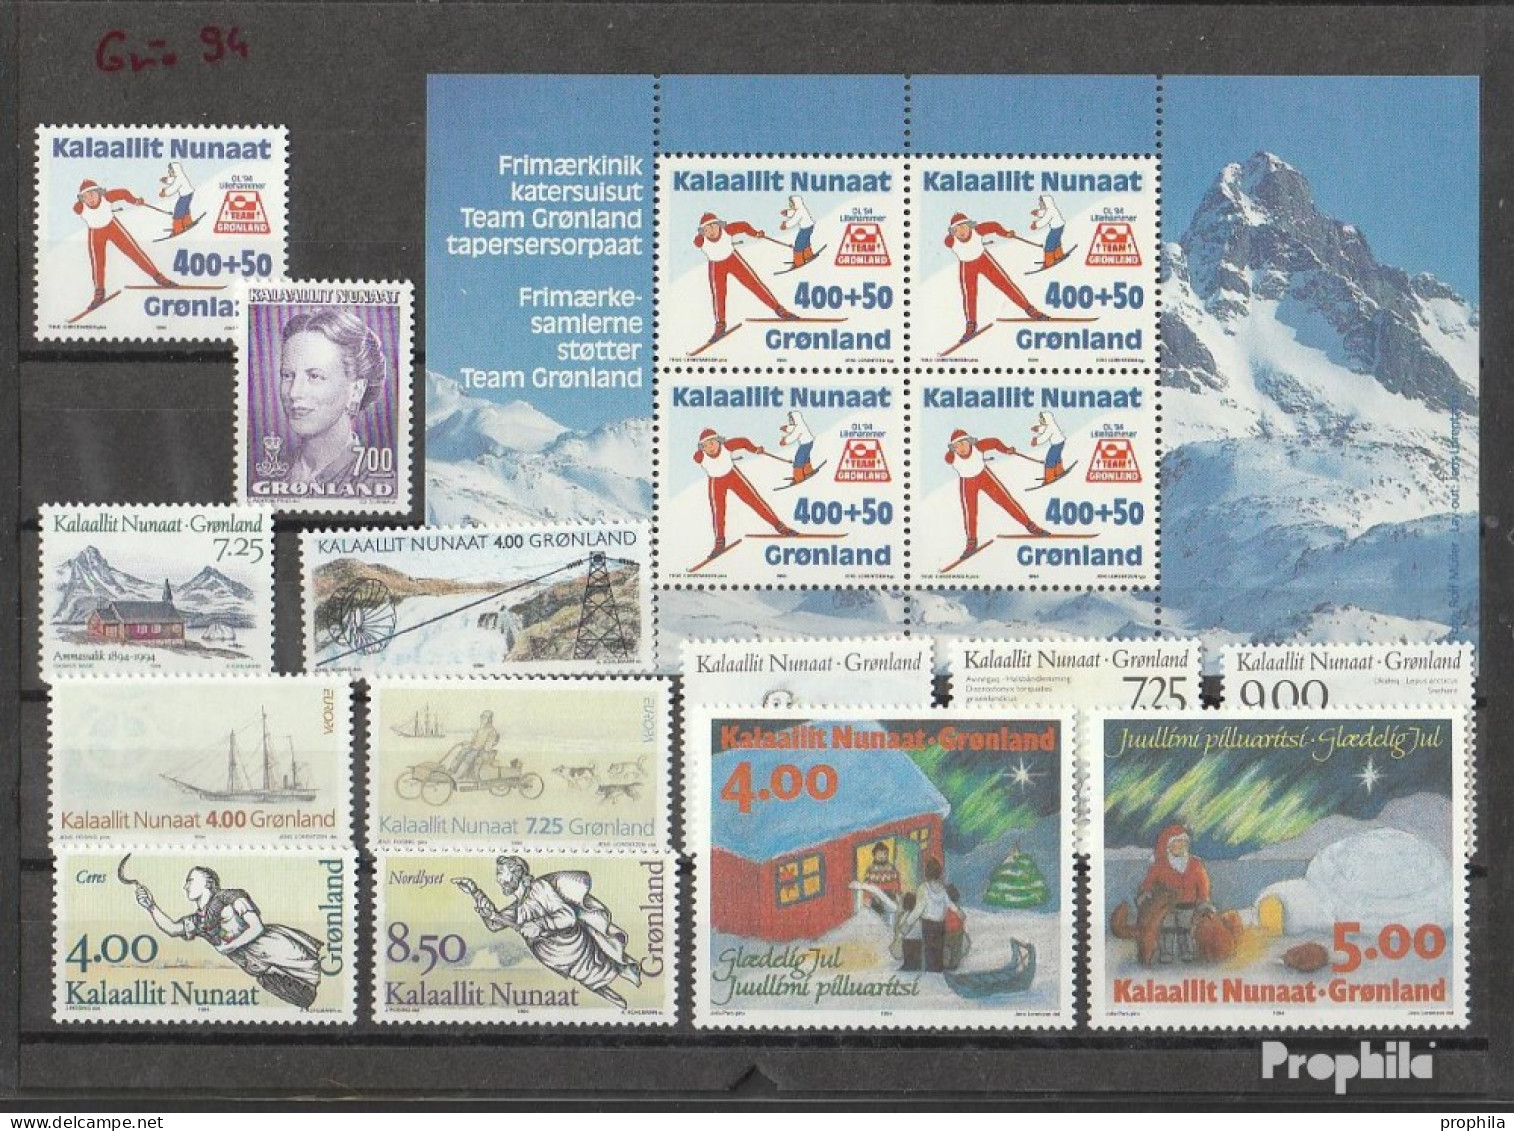 Dänemark - Grönland 1994 Postfrisch Kompletter Jahrgang In Sauberer Erhaltung - Full Years